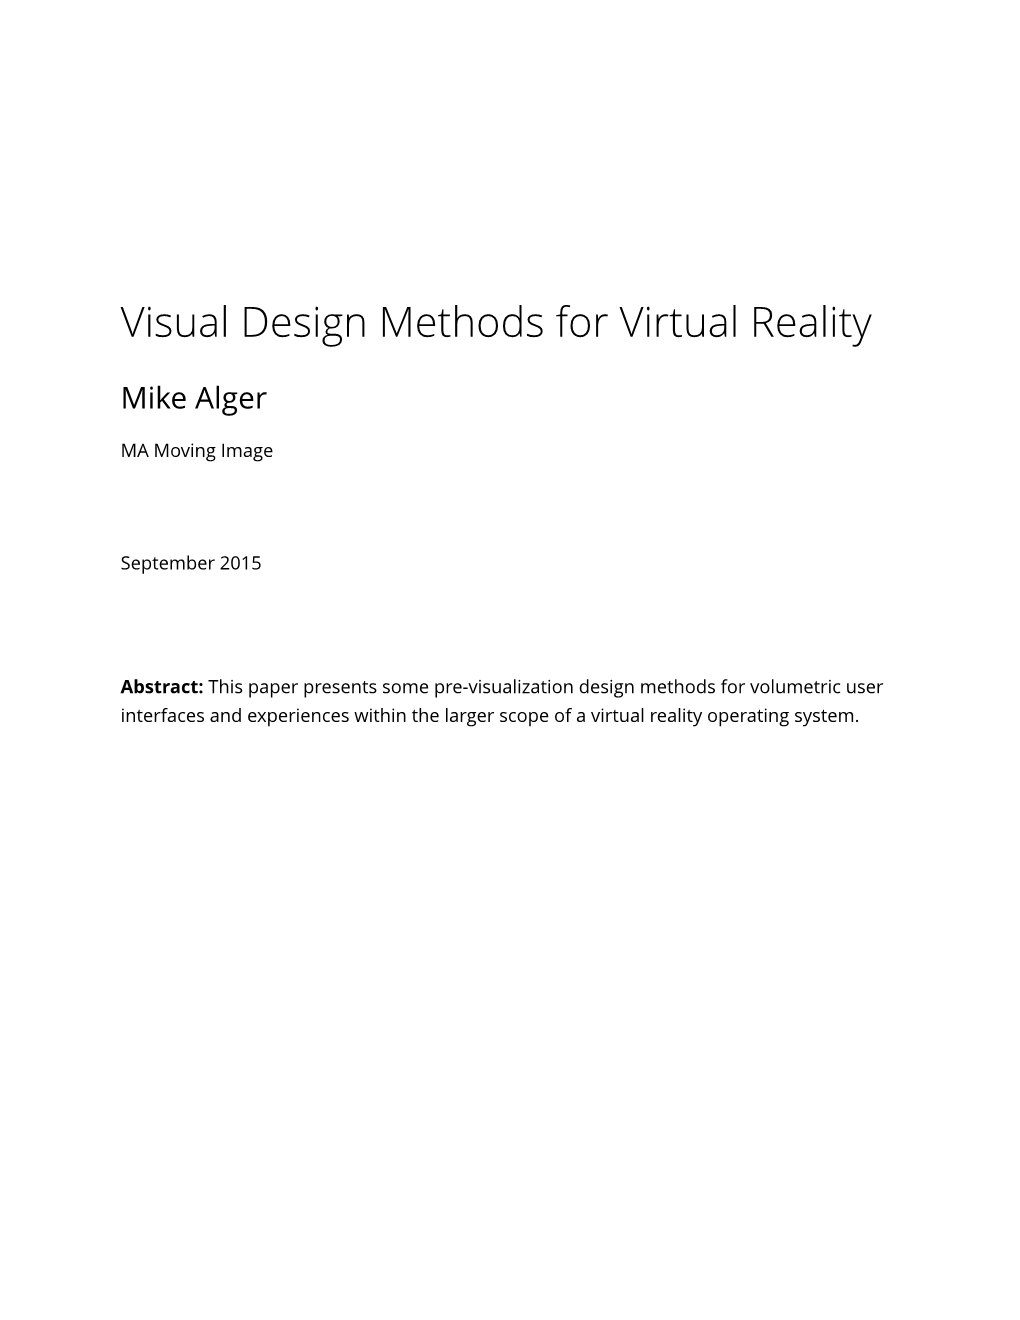 Visual Design Methods for VR